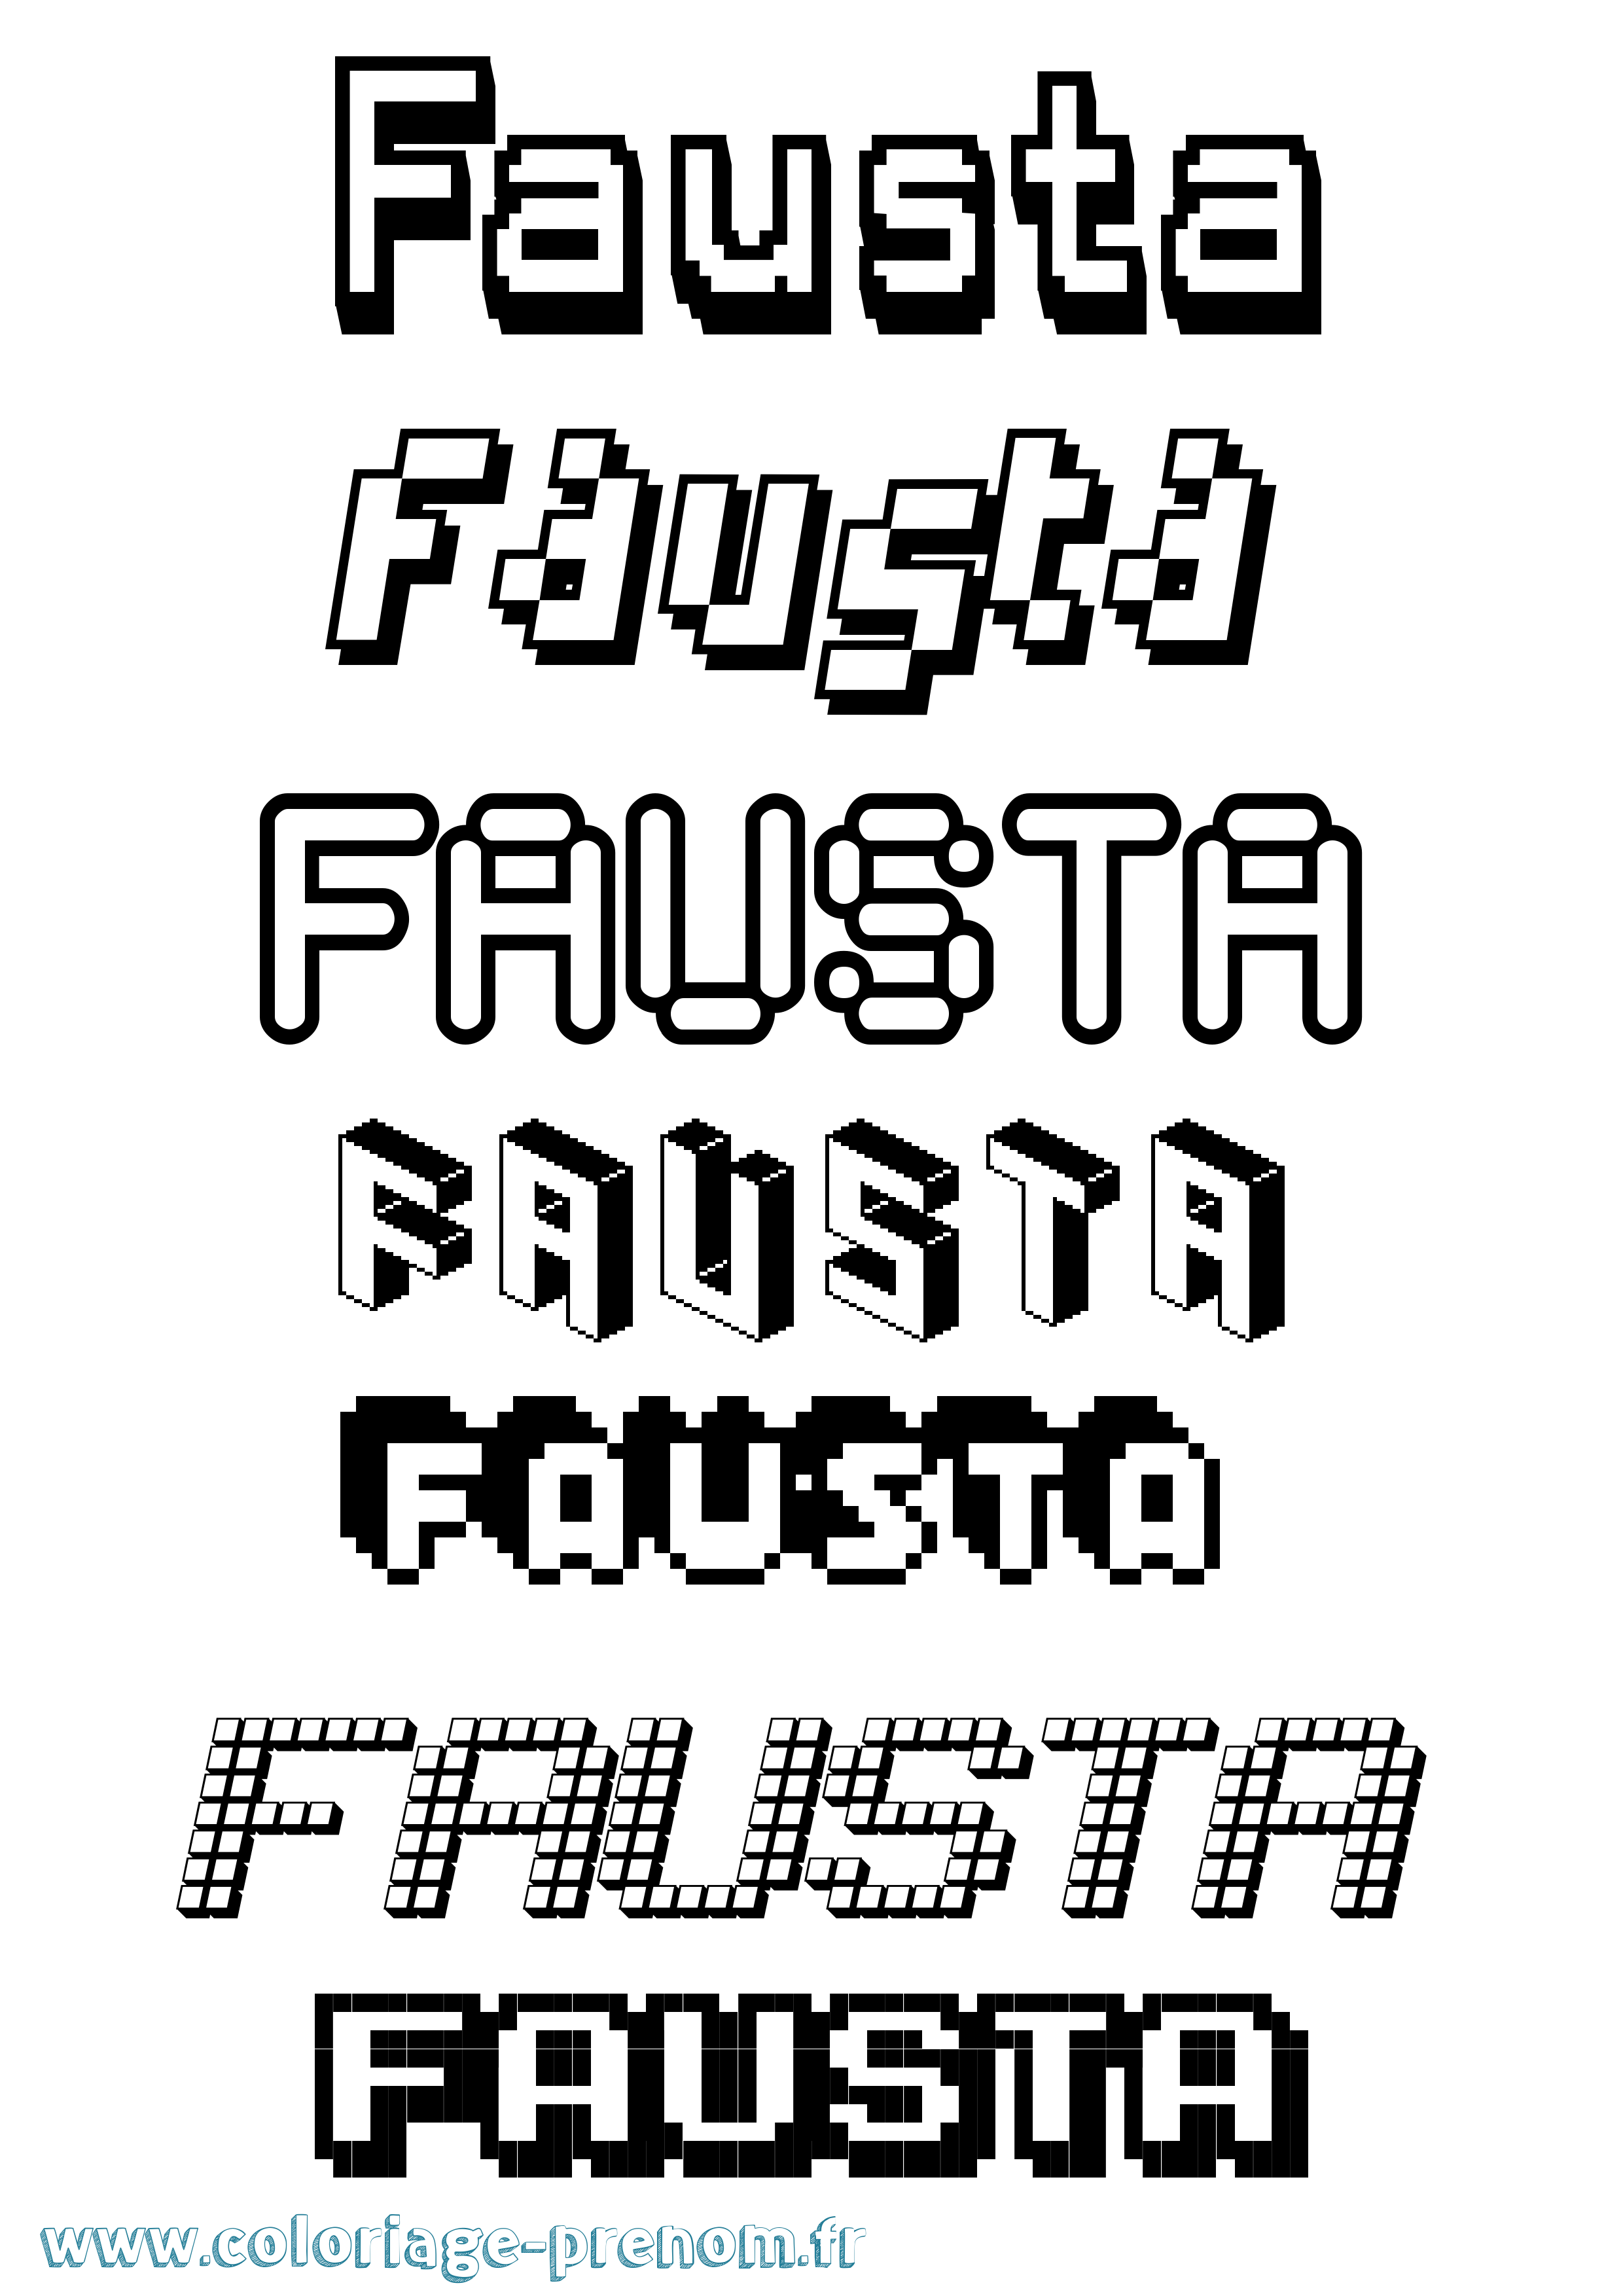 Coloriage prénom Fausta Pixel